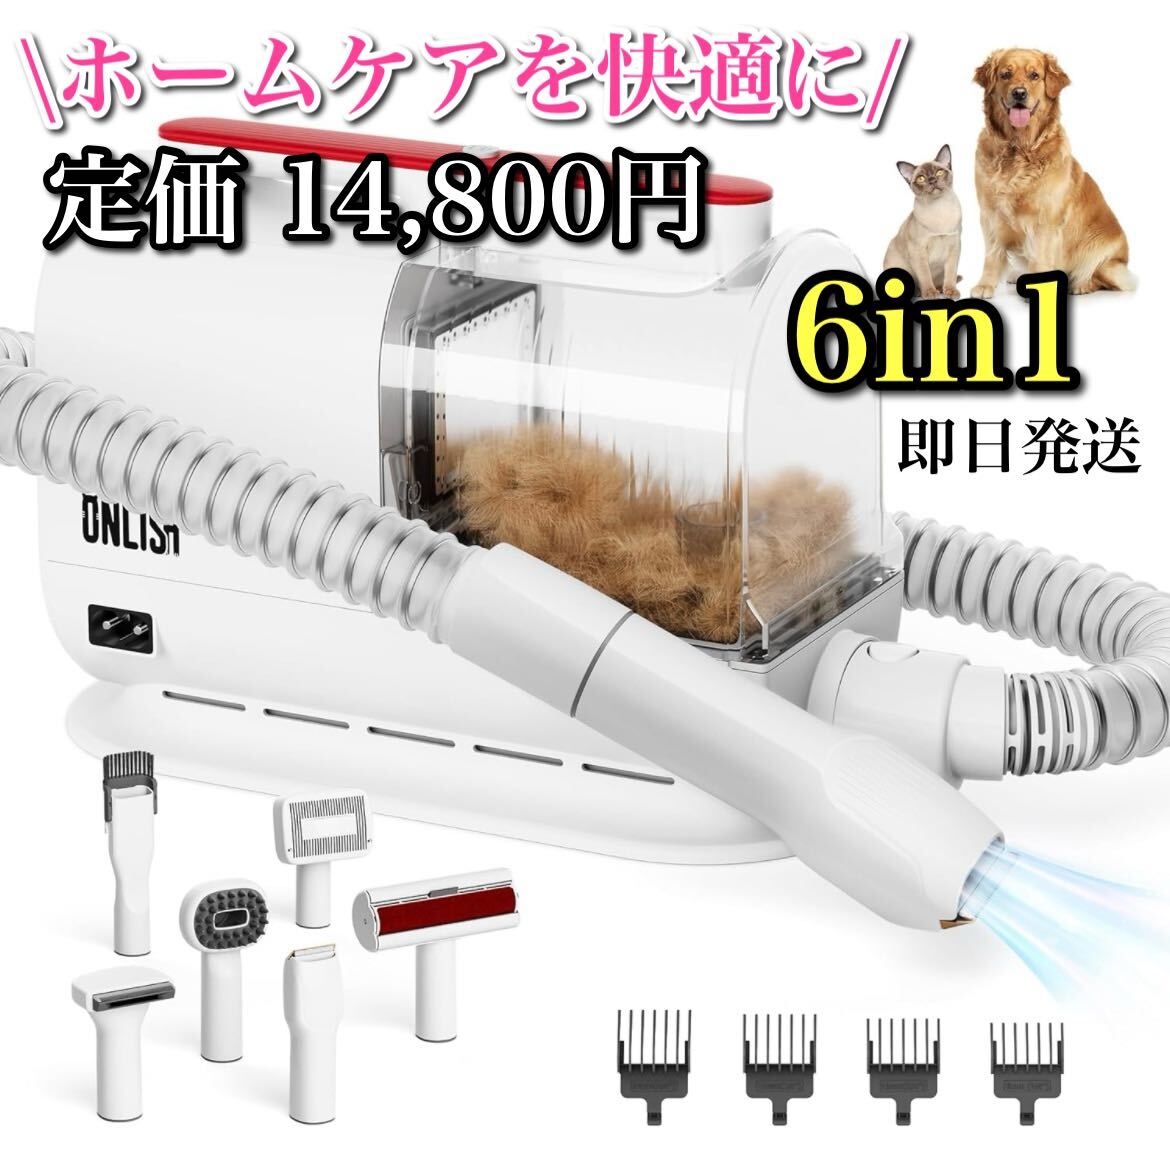 【大特価】ペット用 グルーミング 掃除機 バリカン 犬 猫 多機能 クリーナー グルーミングセット